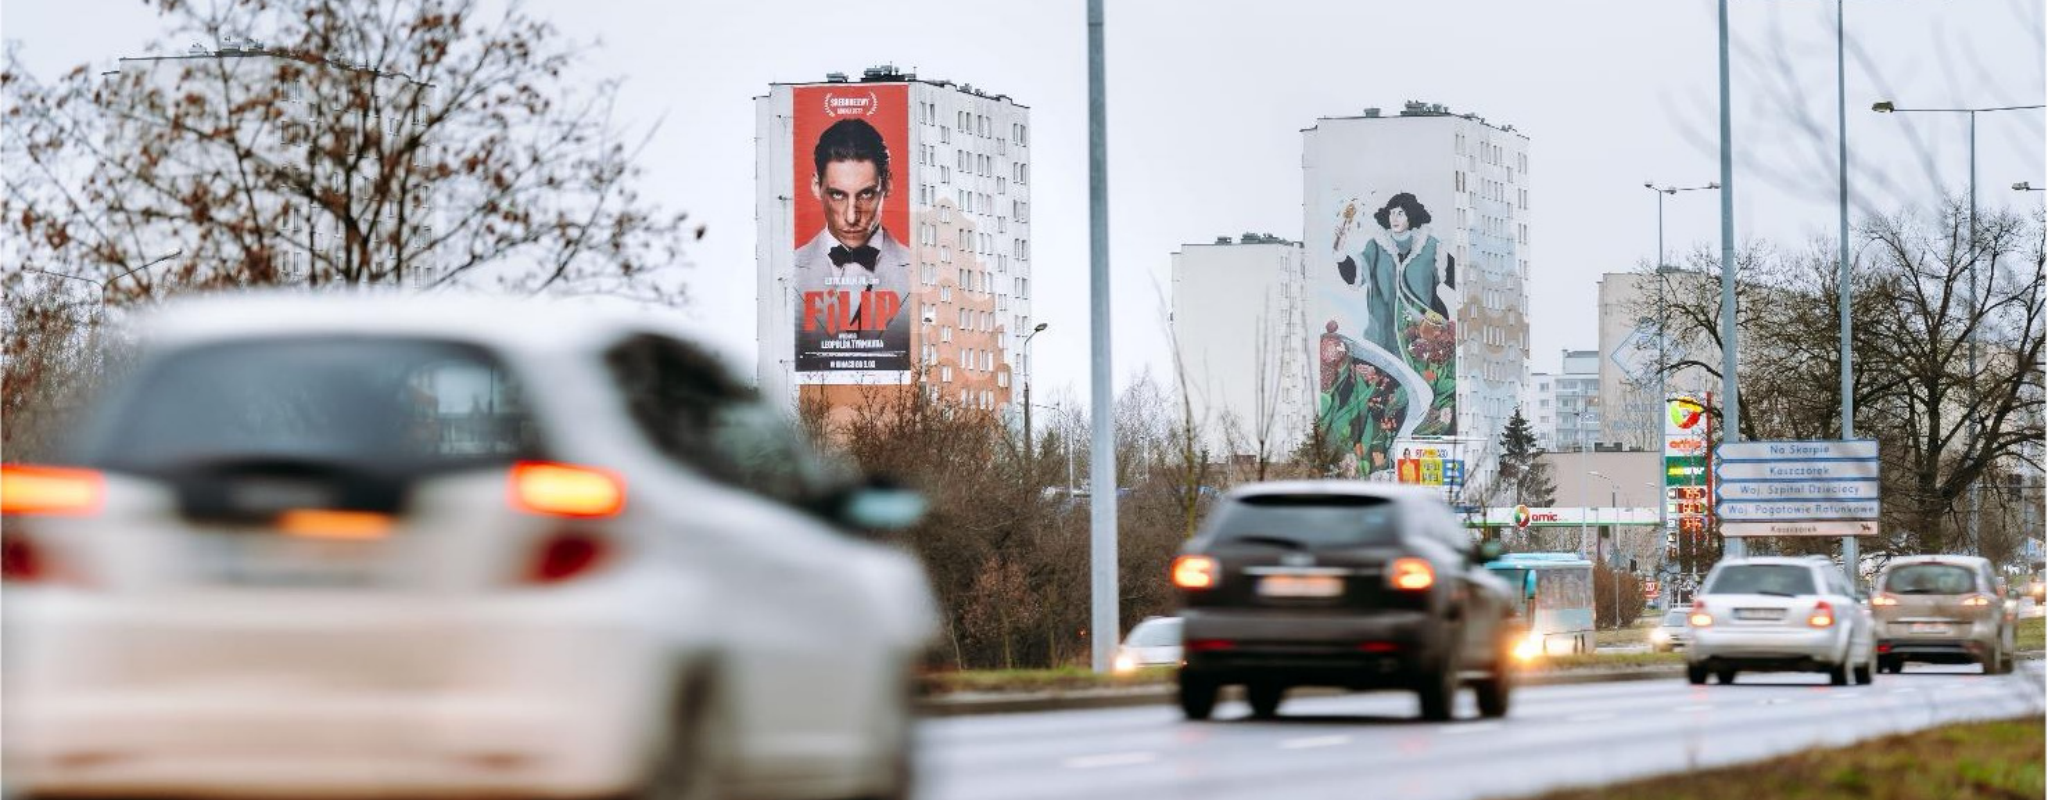 kampania reklamowa Toruń